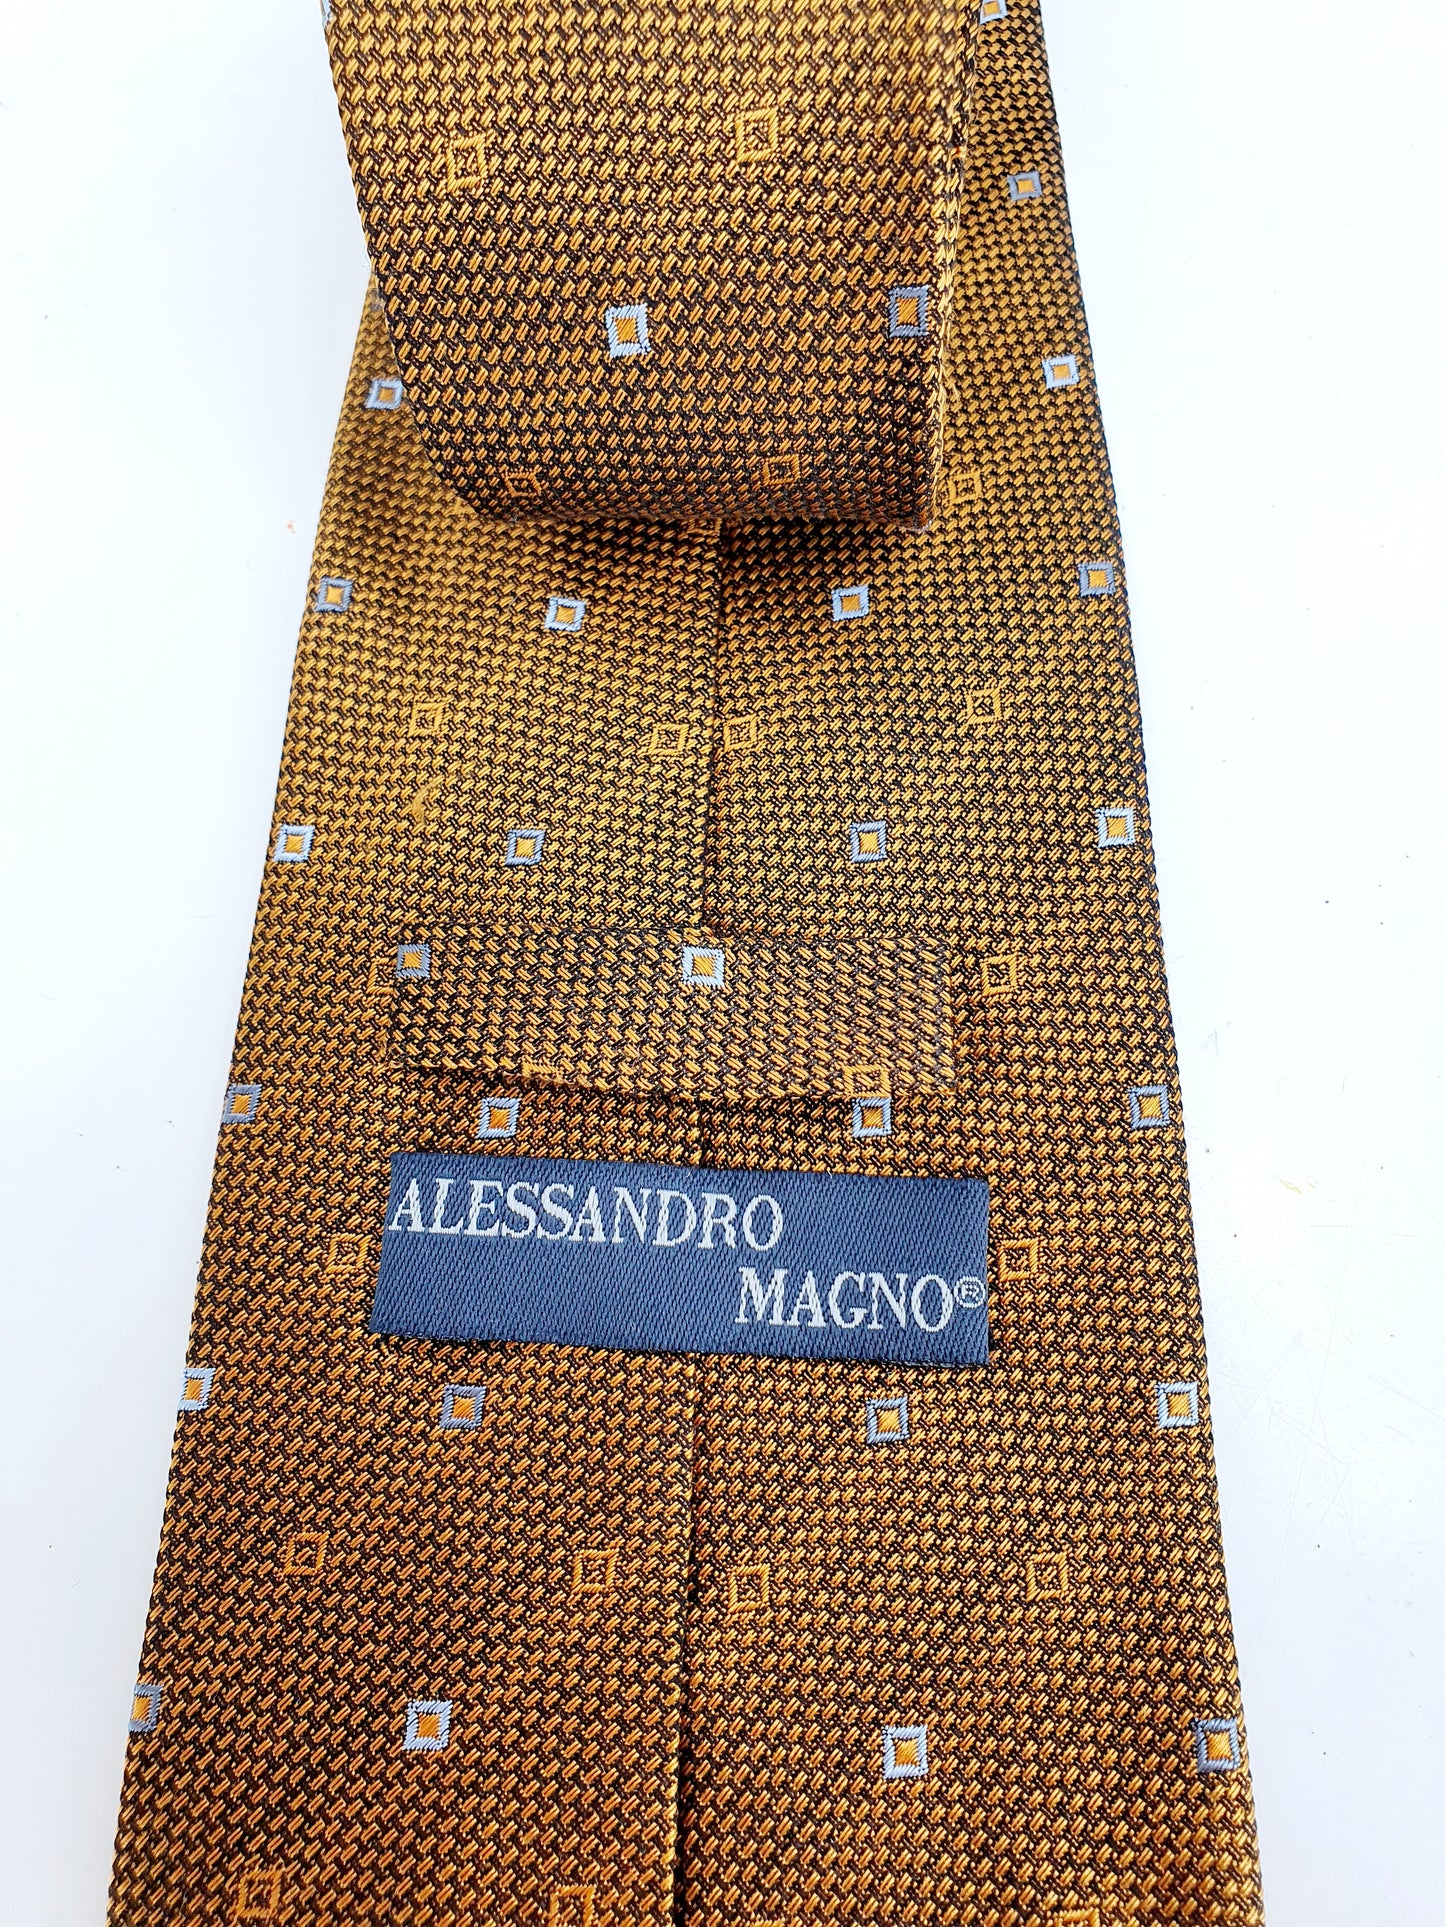 Alessandro Magno, musta-kultainen silkkikravatti